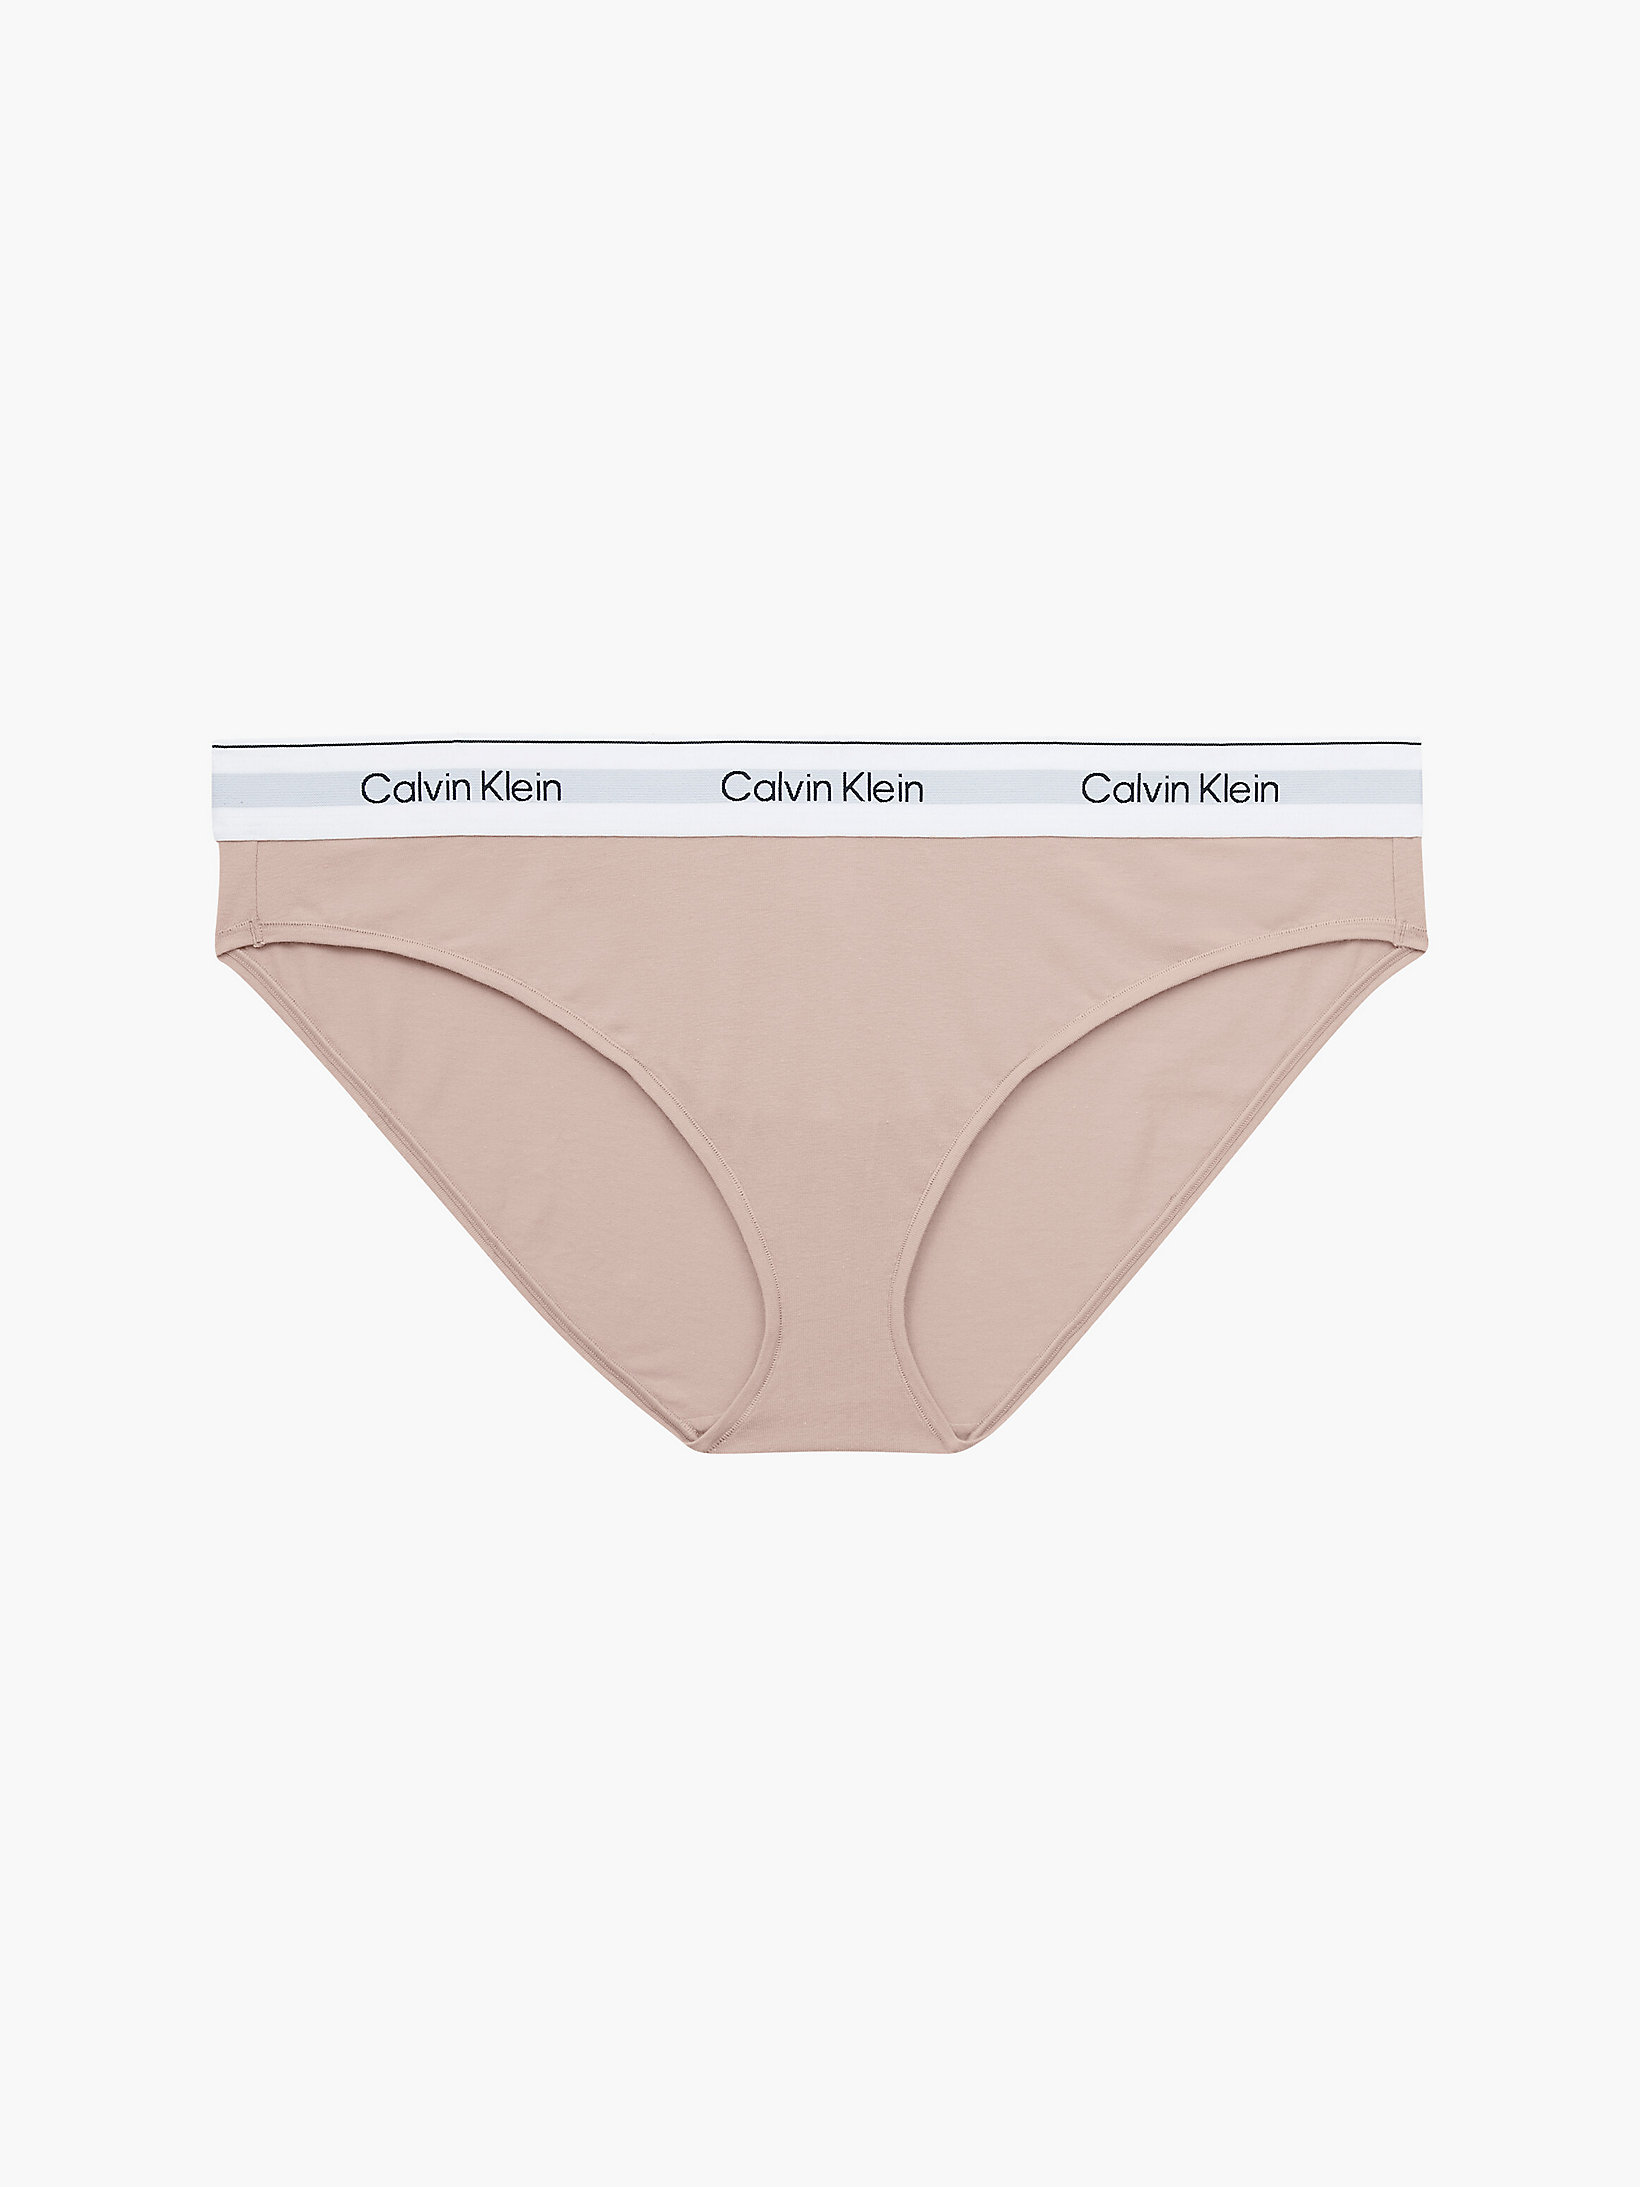 Cedar > Слипы плюс-сайз - Modern Cotton > undefined Женщины - Calvin Klein